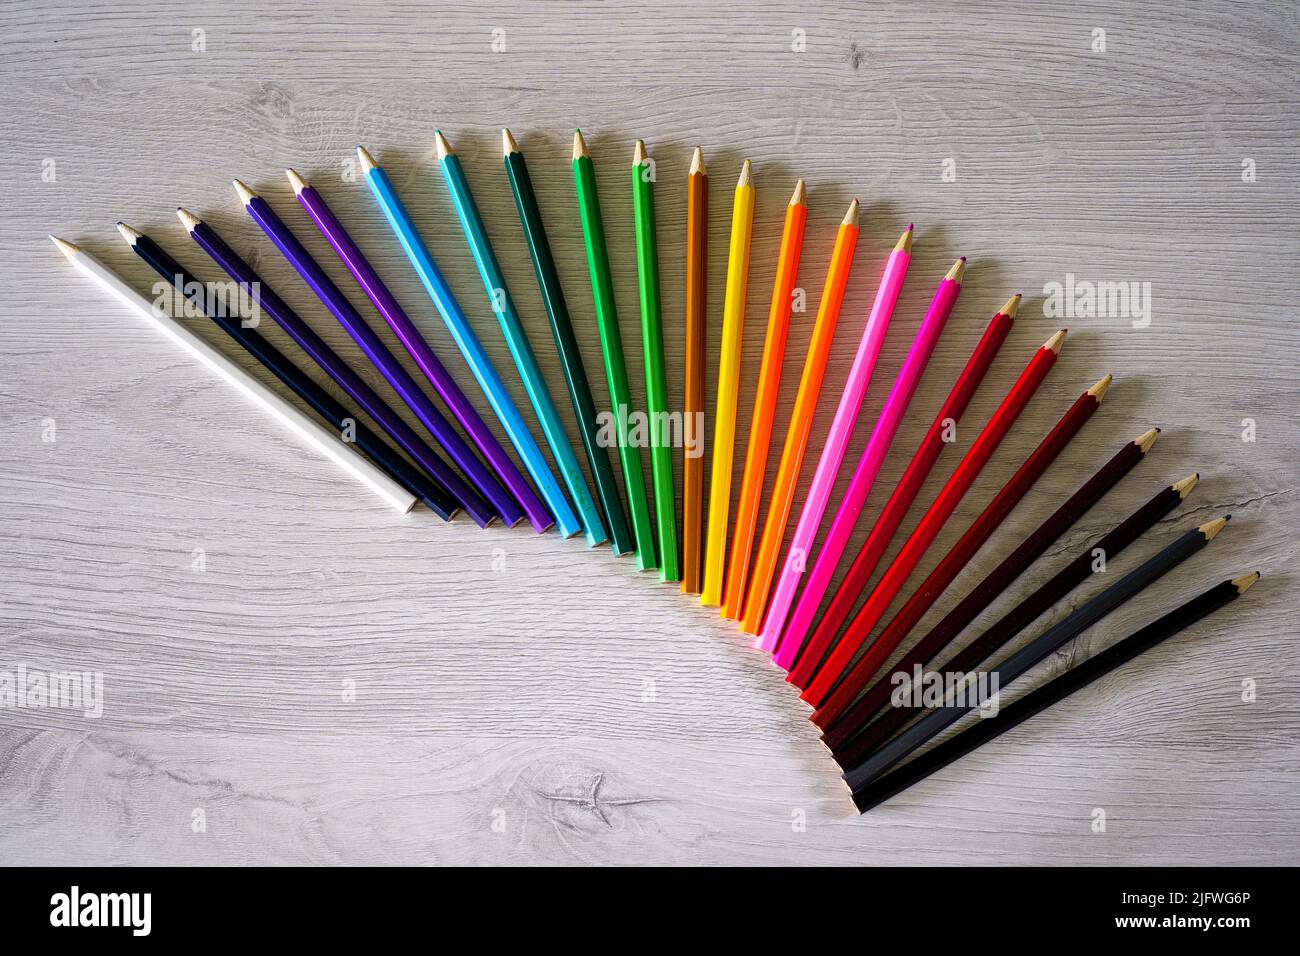 Ein Tisch voller farbiger Schulstifte, die einen Regenbogen bilden, und Vorräte für Schulkinder Stockfoto